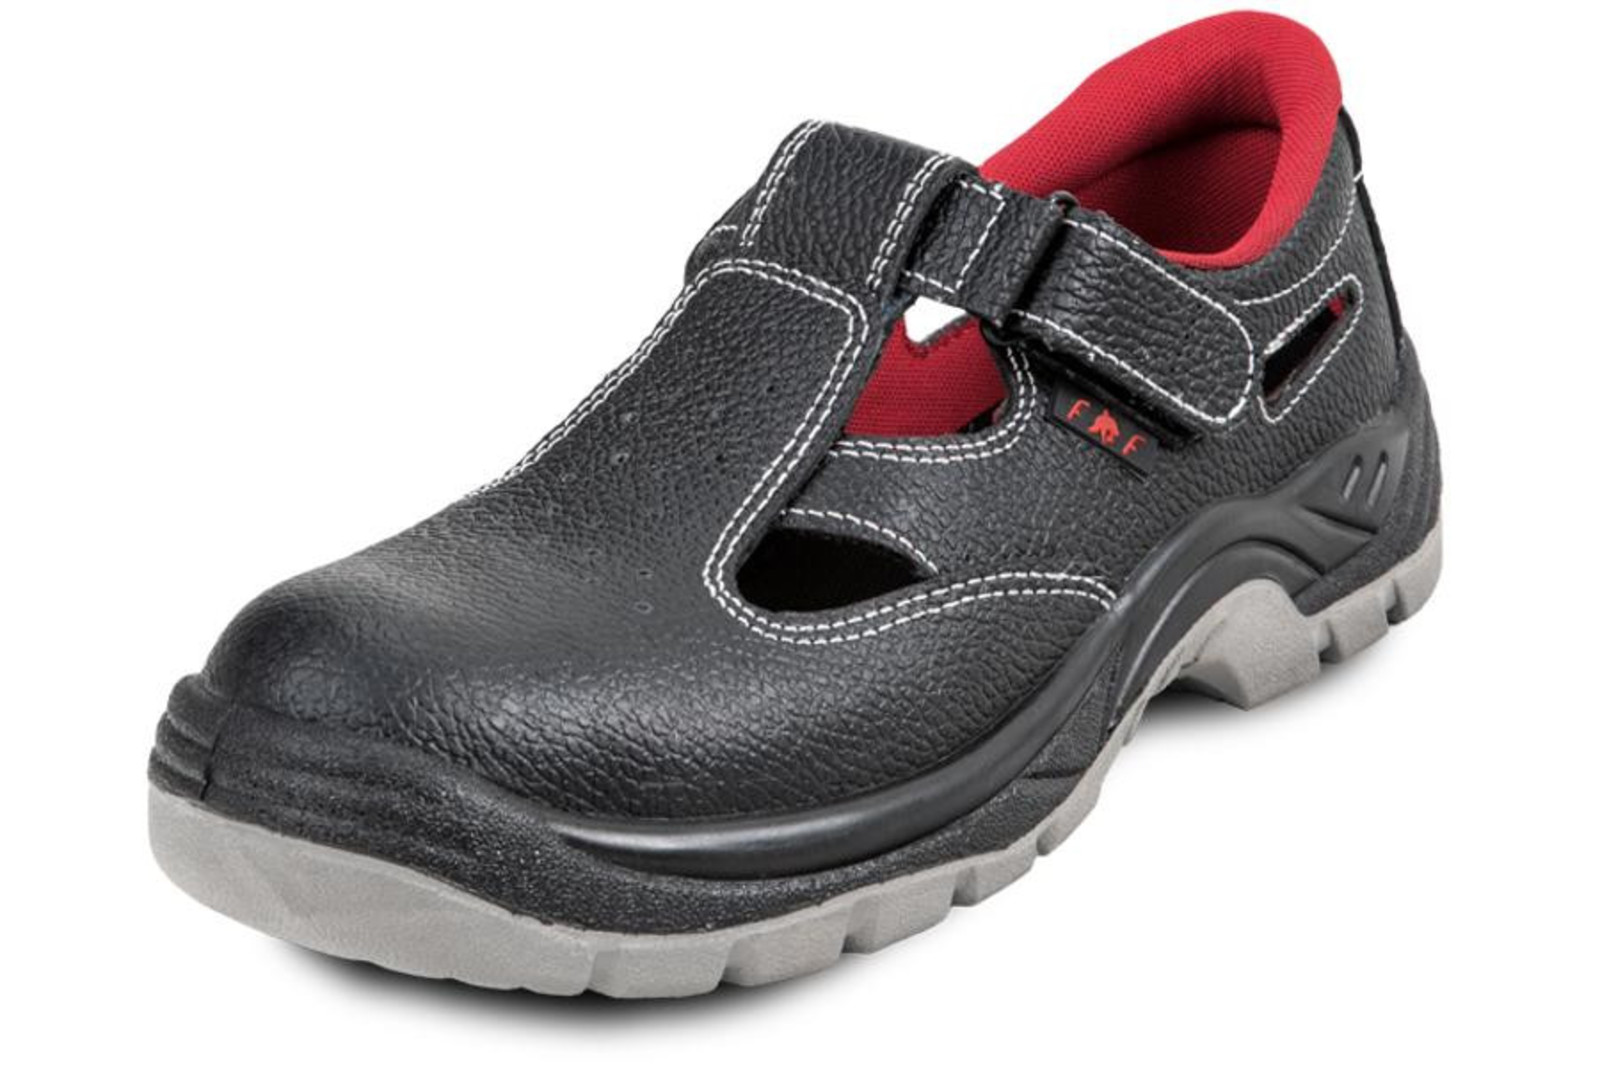 Pracovné sandále Bonn SC 01-002 O1 - veľkosť: 48, farba: čierna